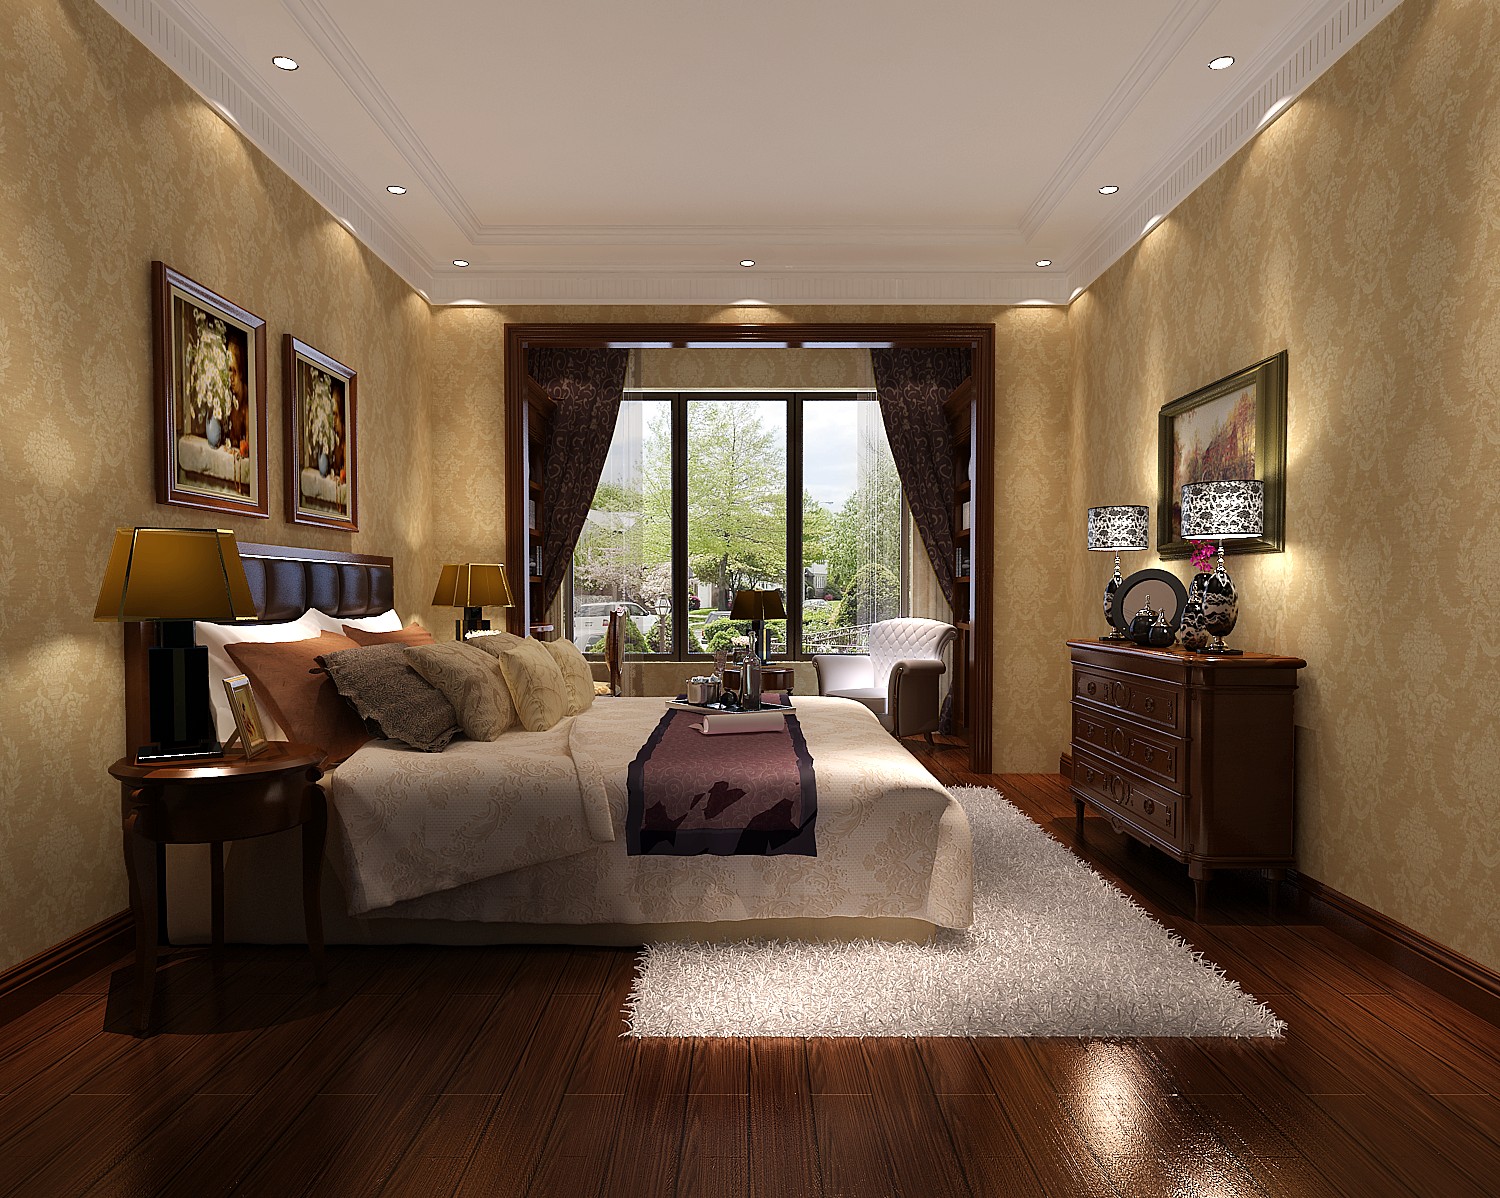 高度国际 西山壹号院 欧式风格 公寓 卧室图片来自高度国际在西山壹号院-不同风格元素融合的分享